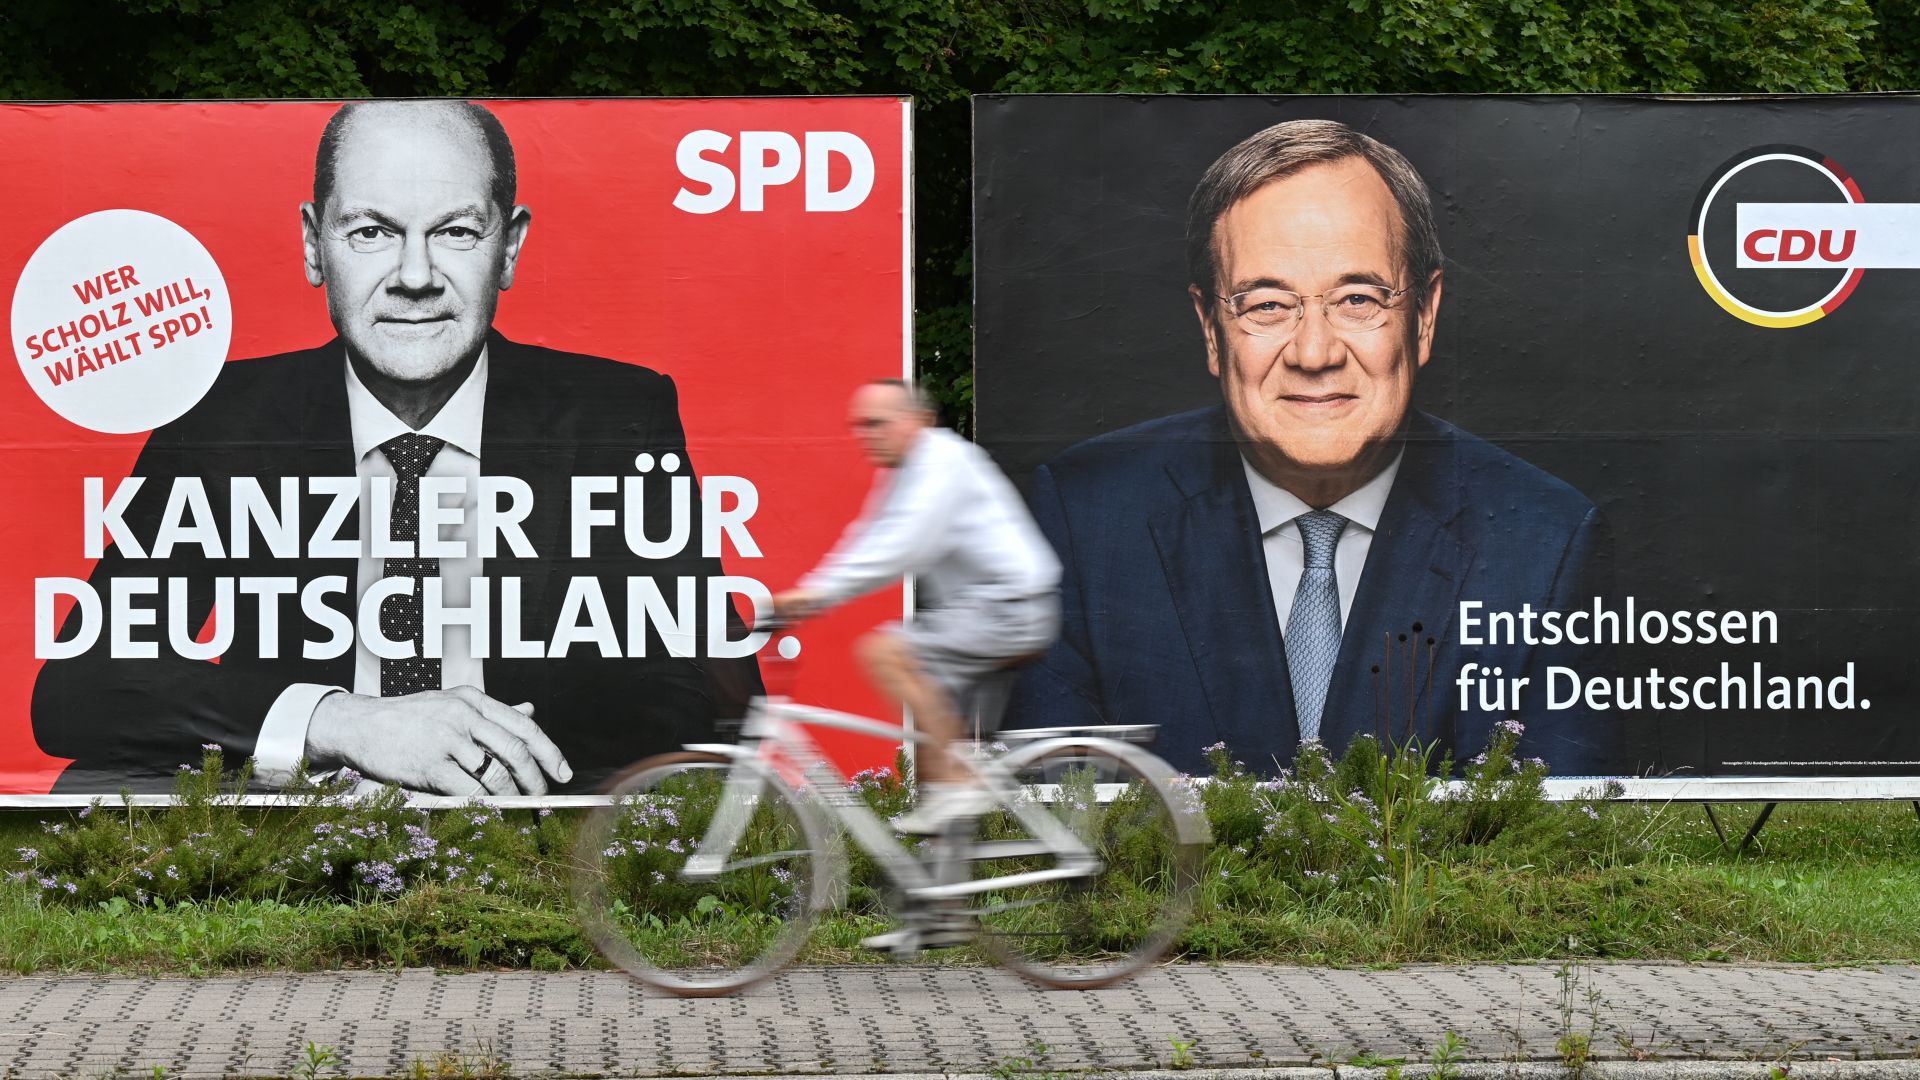  Ein Radfahrer fährt Wahlplakaten mit den Spitzenkandidaten Olaf Scholz (SPD) und Armin Laschet (CDU) vorbei.